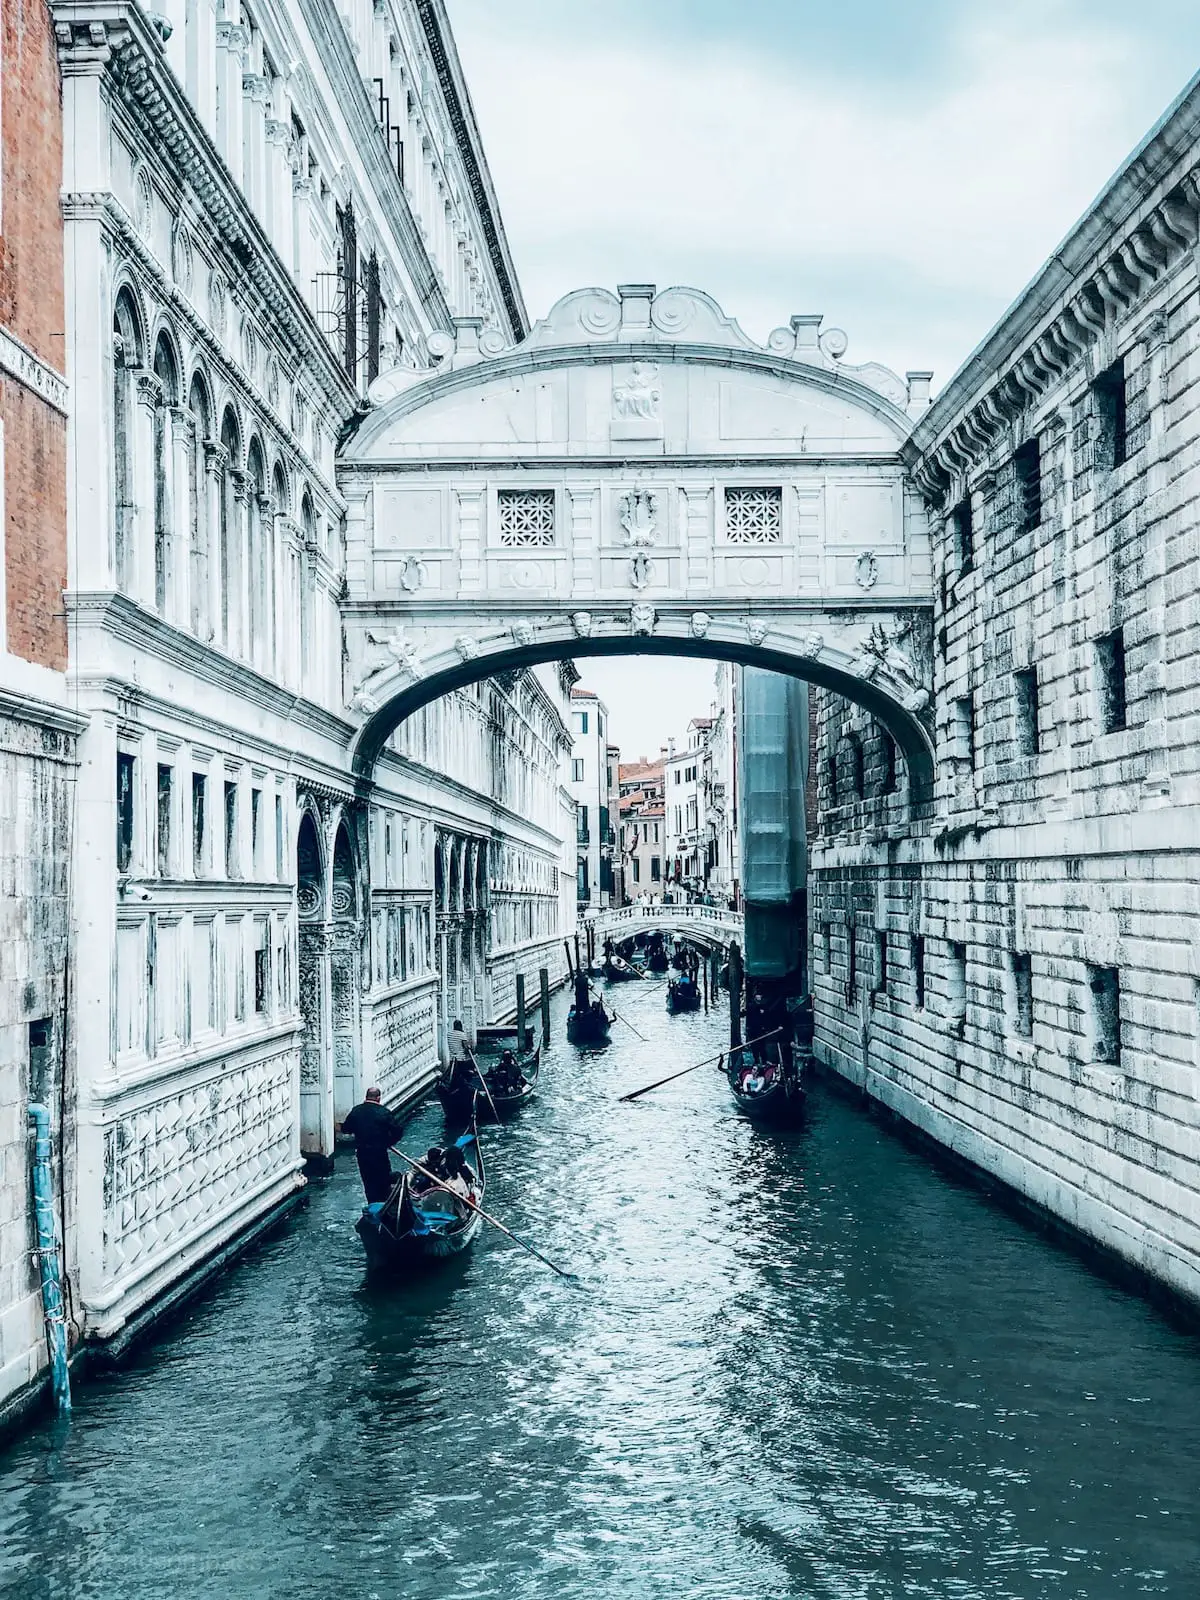 Venedig Sehenswürdigkeiten, Städtereise nach Venedig Städtetrip, Kanäle und Brücken in Venedig, Gondeln, Urlaub in Italien, Seufzerbrücke